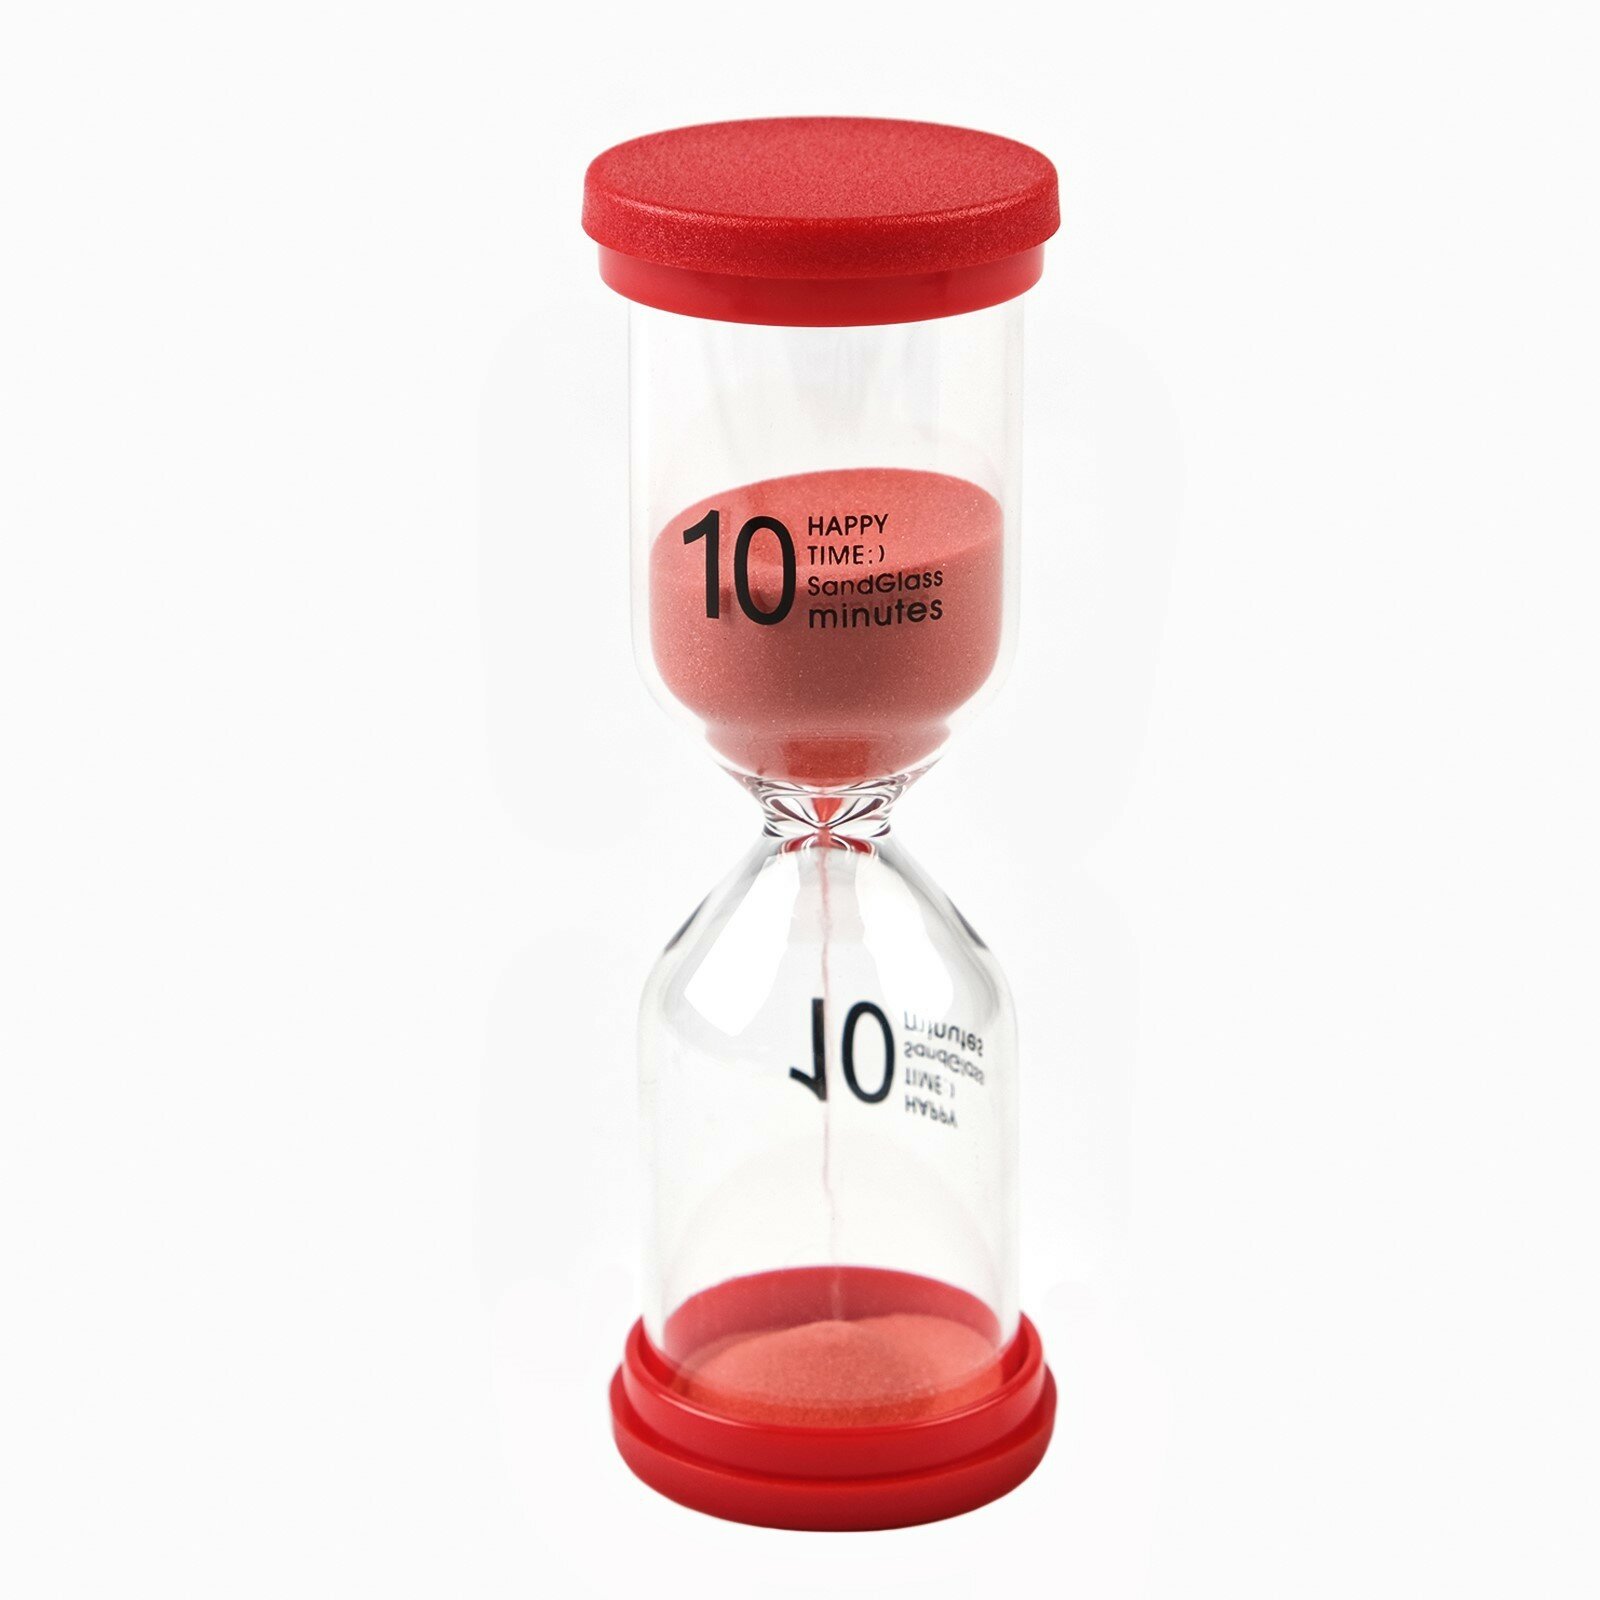 Песочные часы Happy time на 10 минут 4 x 11 см красные